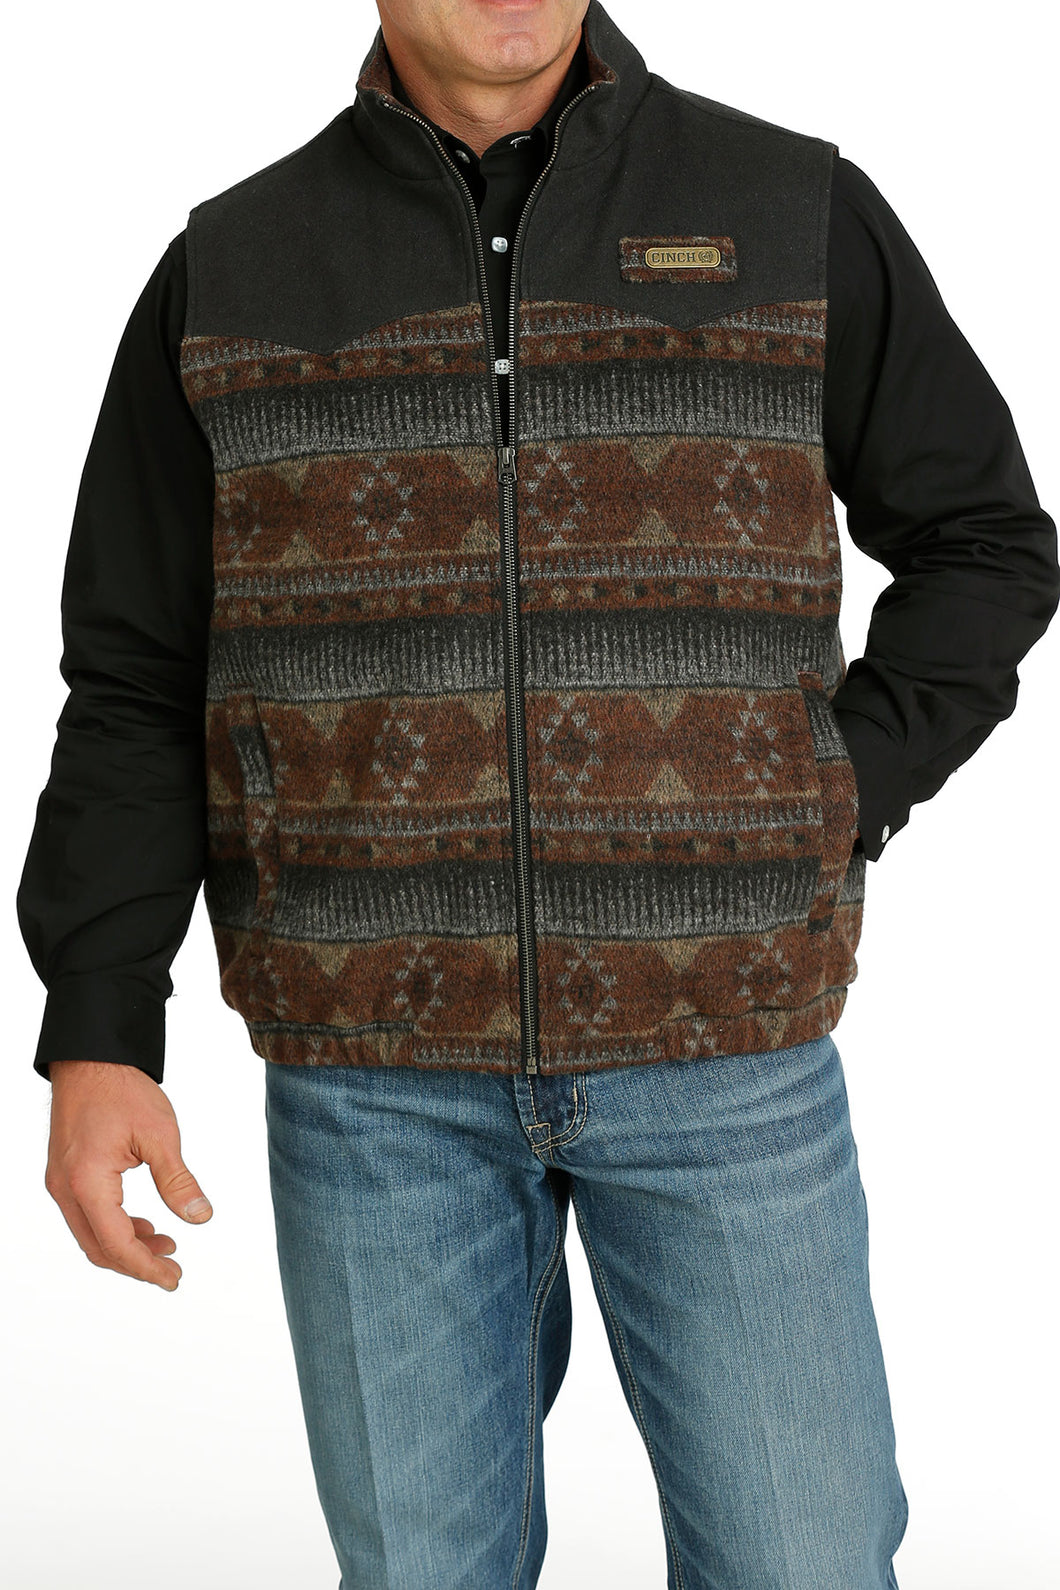 Cinch Multi Color Aztec Print Poly Wool Conceal Carry Vest for Men – Pard's  Western Shop Inc.